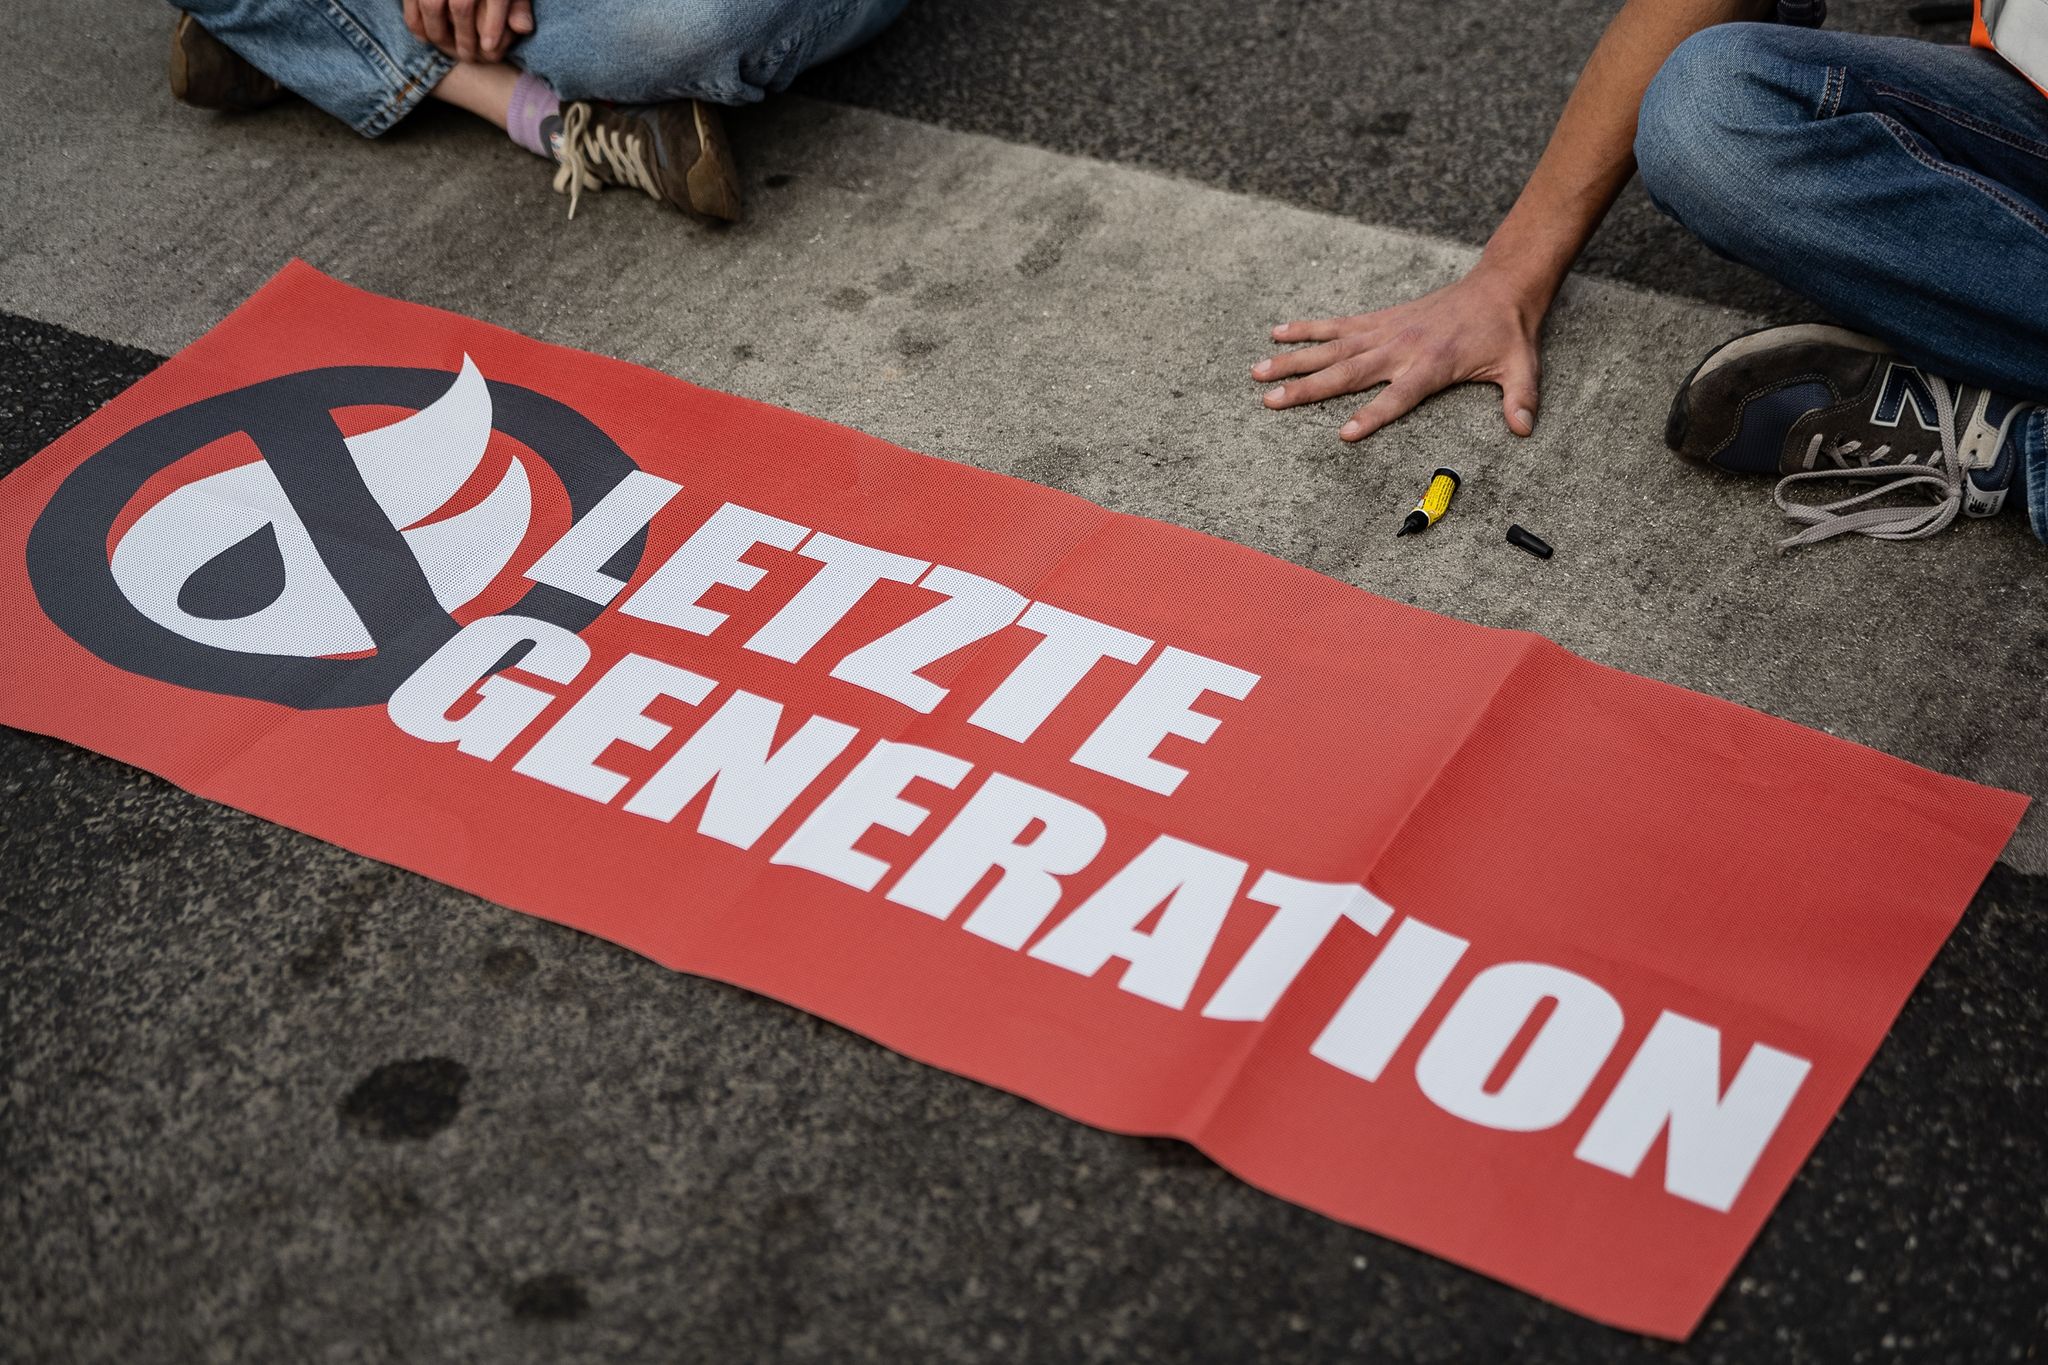 Ein Aktivist der Gruppe "Letzte Generation", blockiert eine Kreuzung.